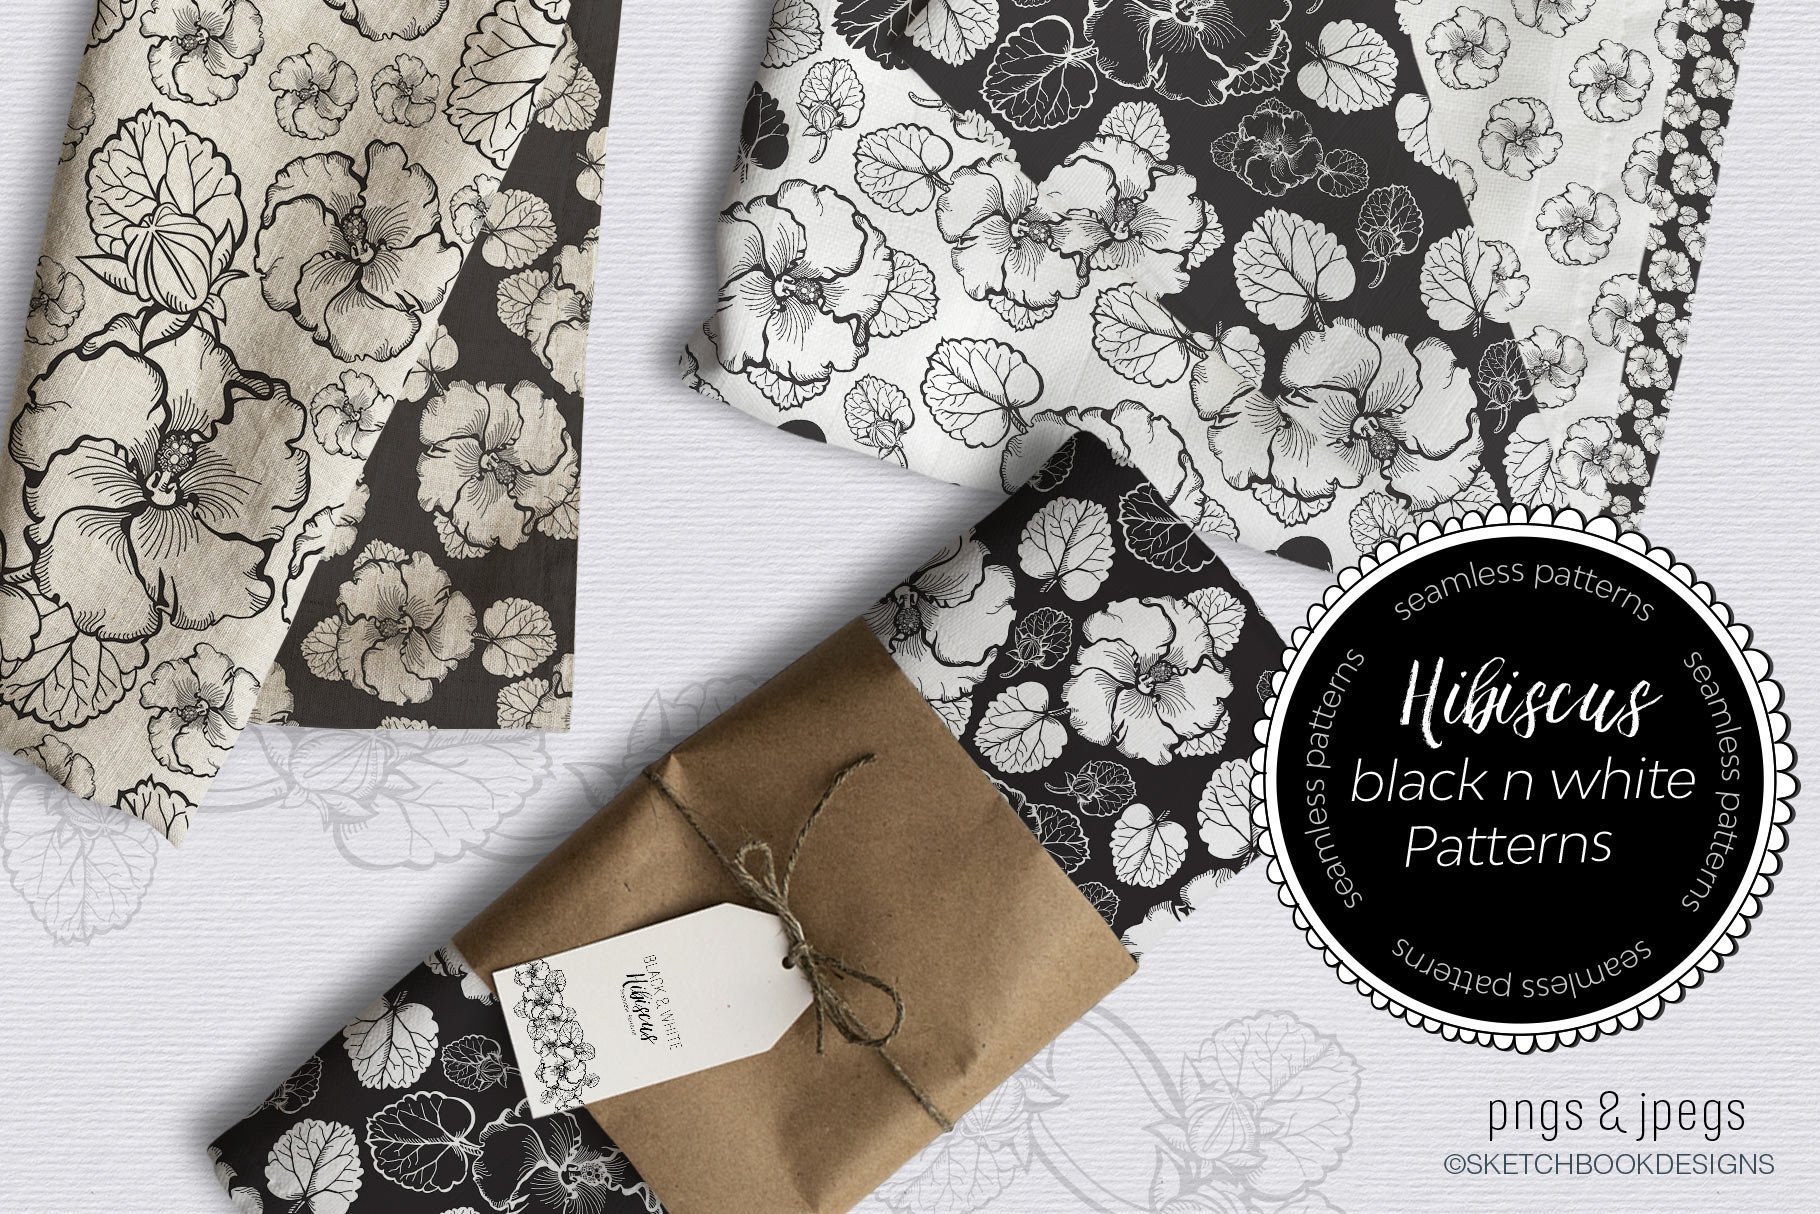 Black & White Hibiscus Design Set